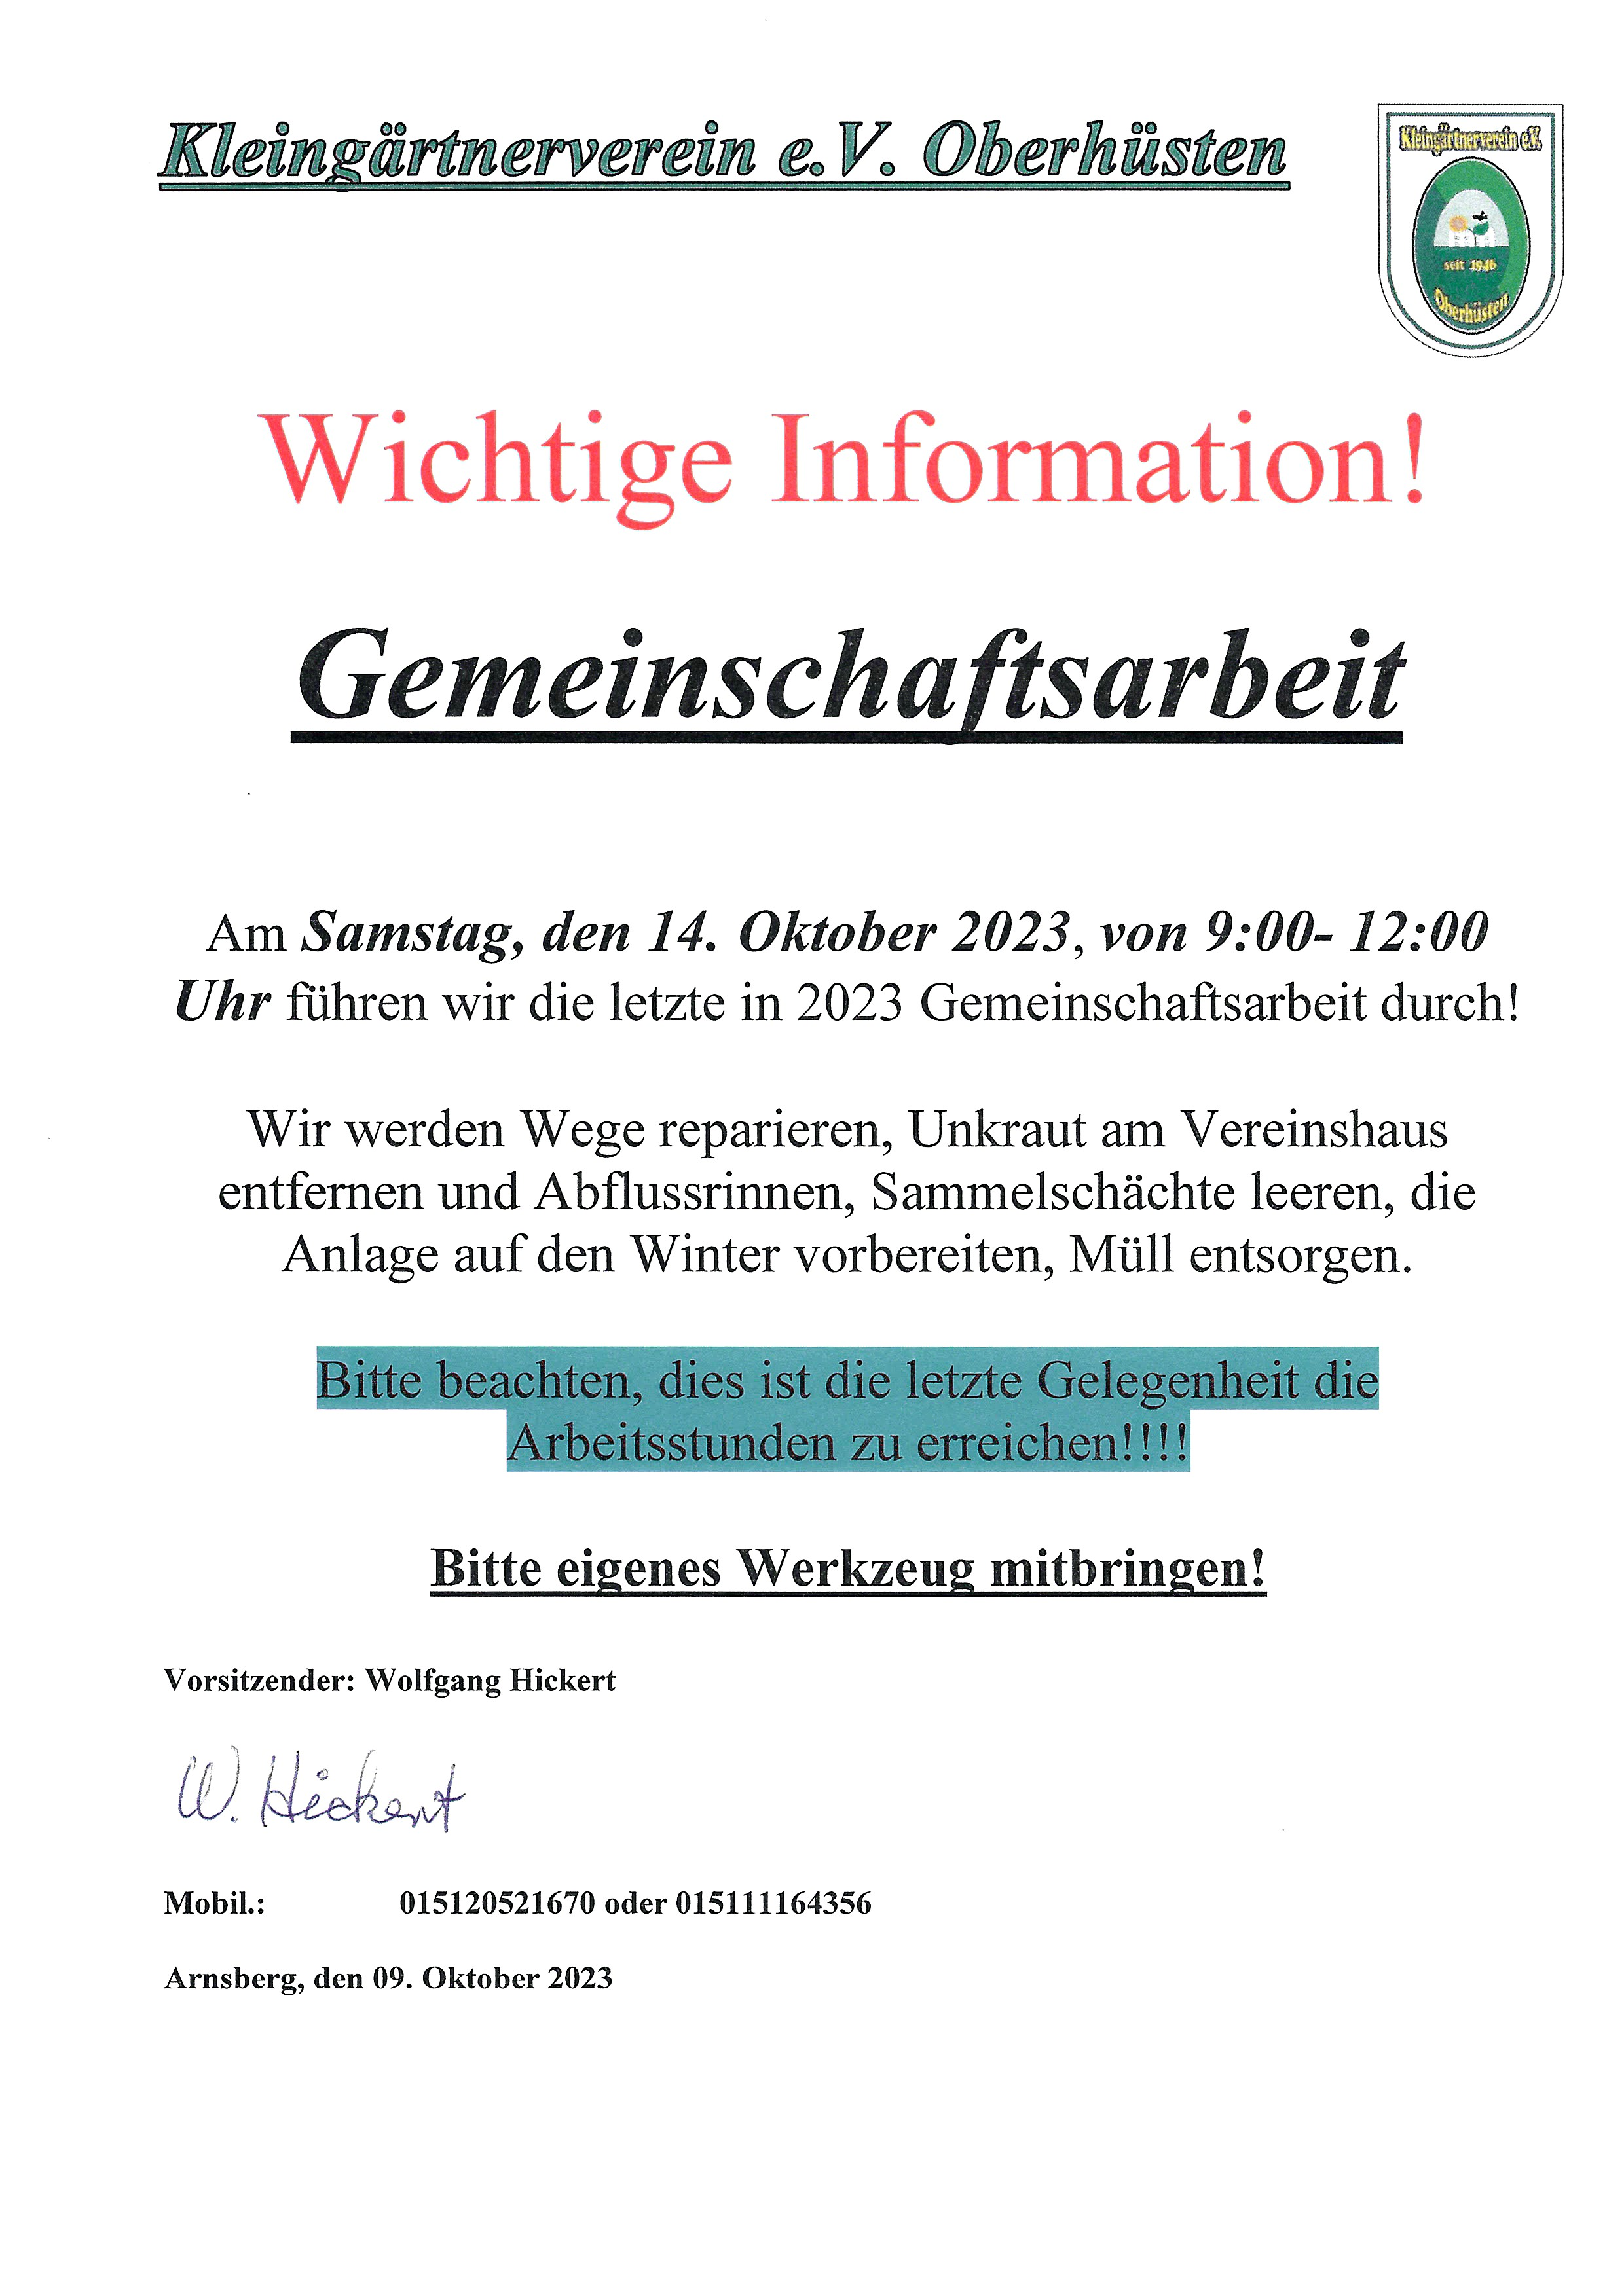 gemeinschaftsarbeit-oktober2023.png